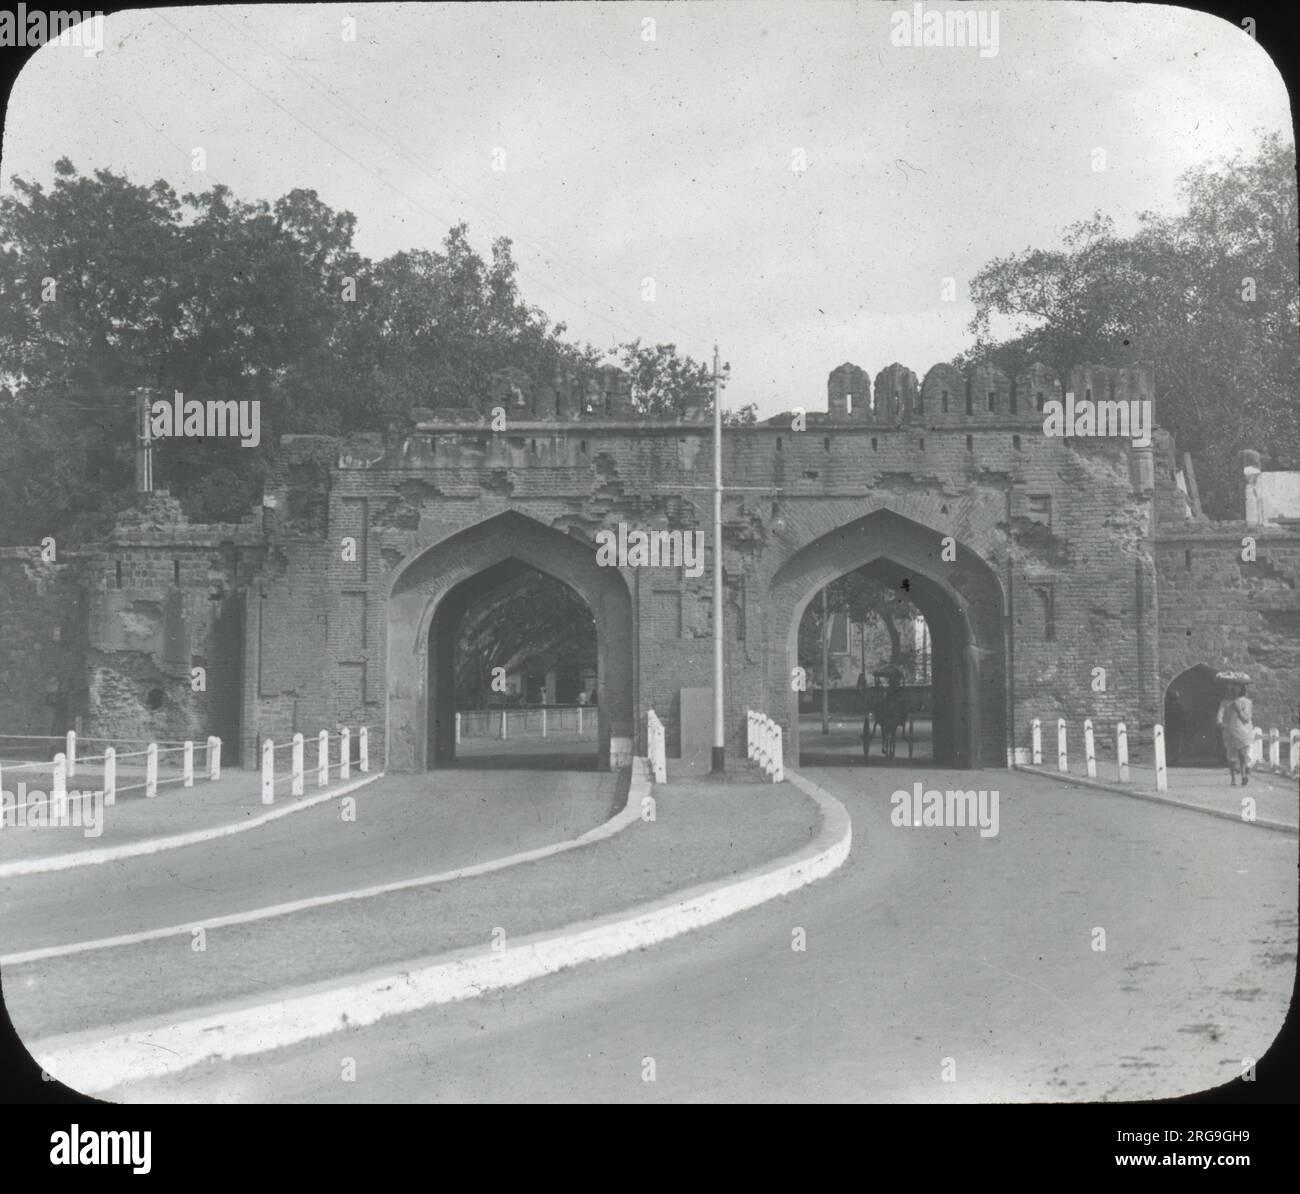 Kashmir Gate, Delhi Stock Photo